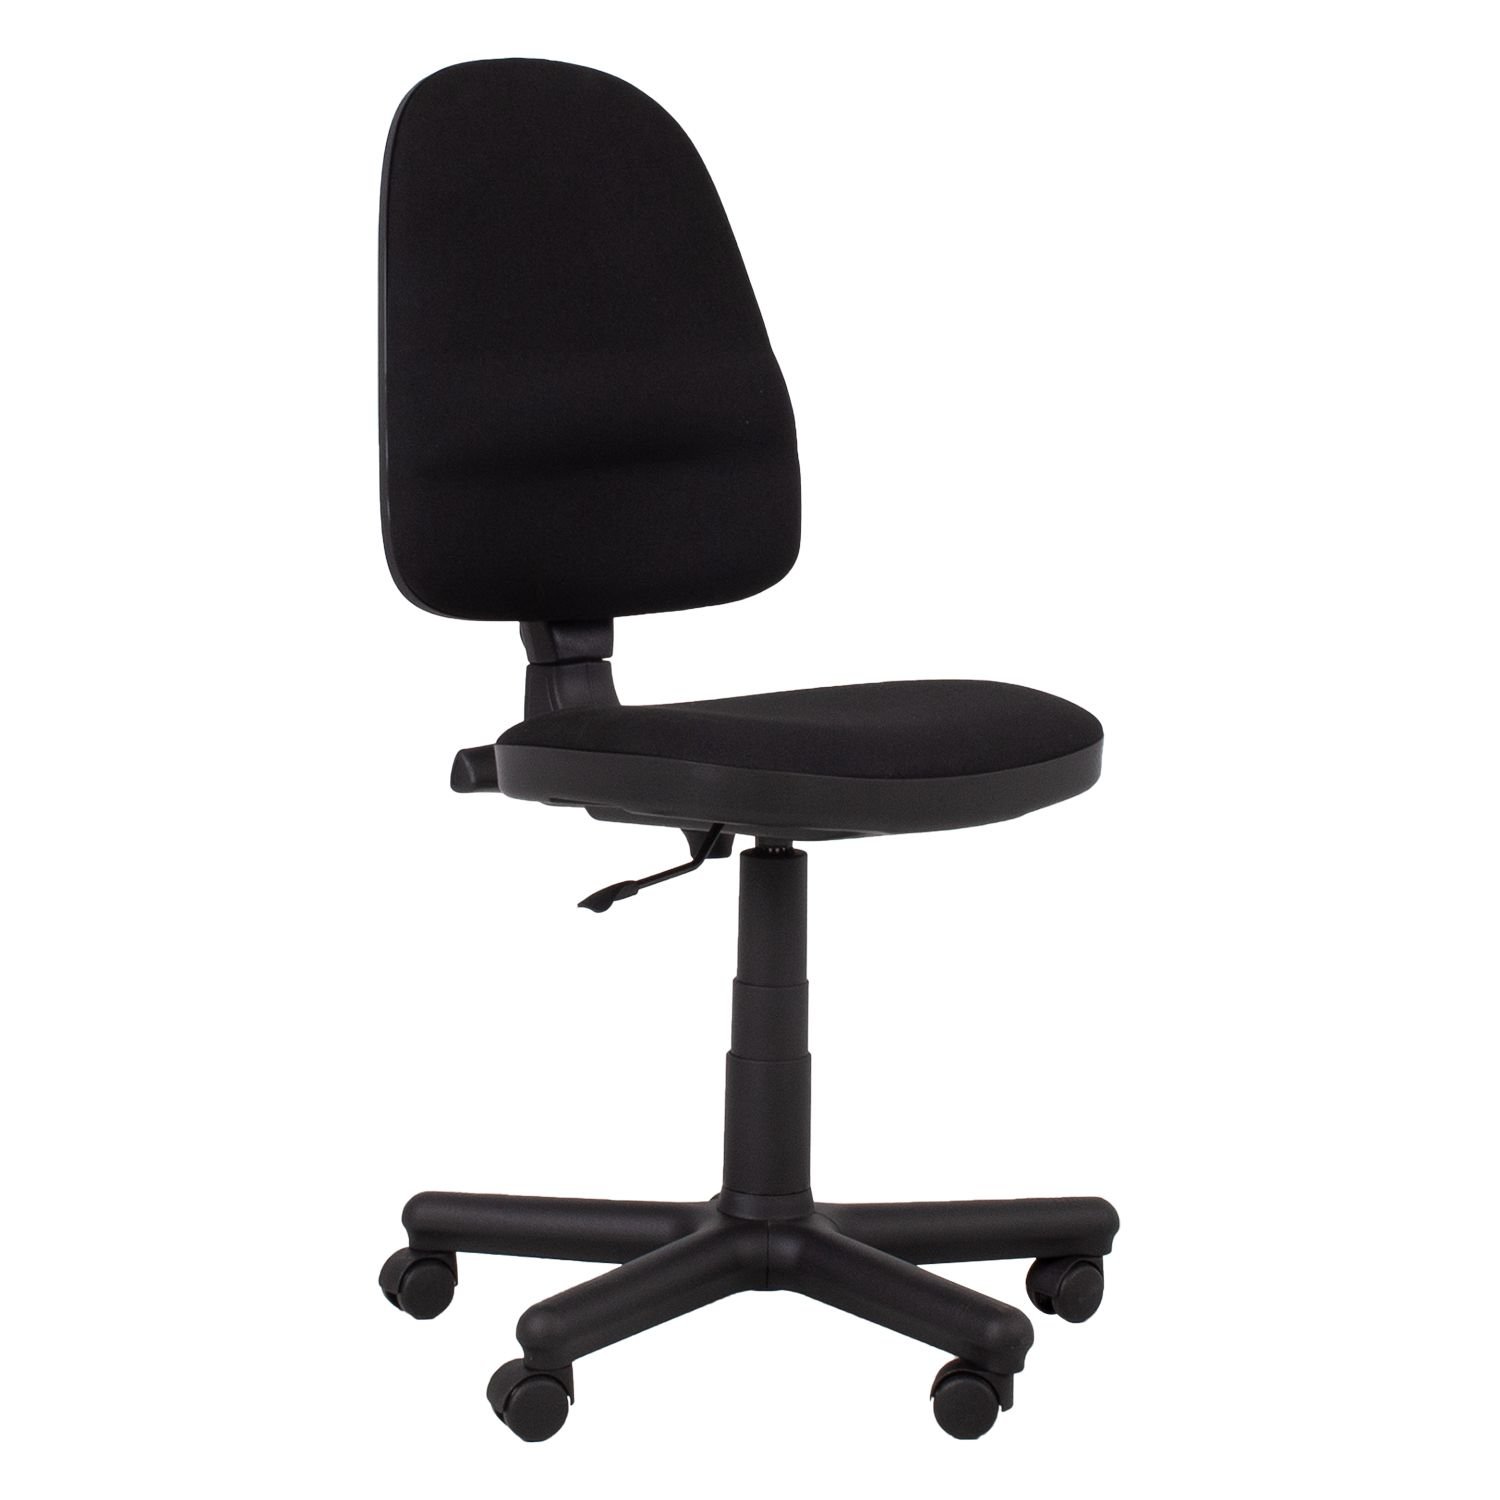 Biuro kėdė PRESTIGE 46x44,5x95,5-113,5 cm, juoda